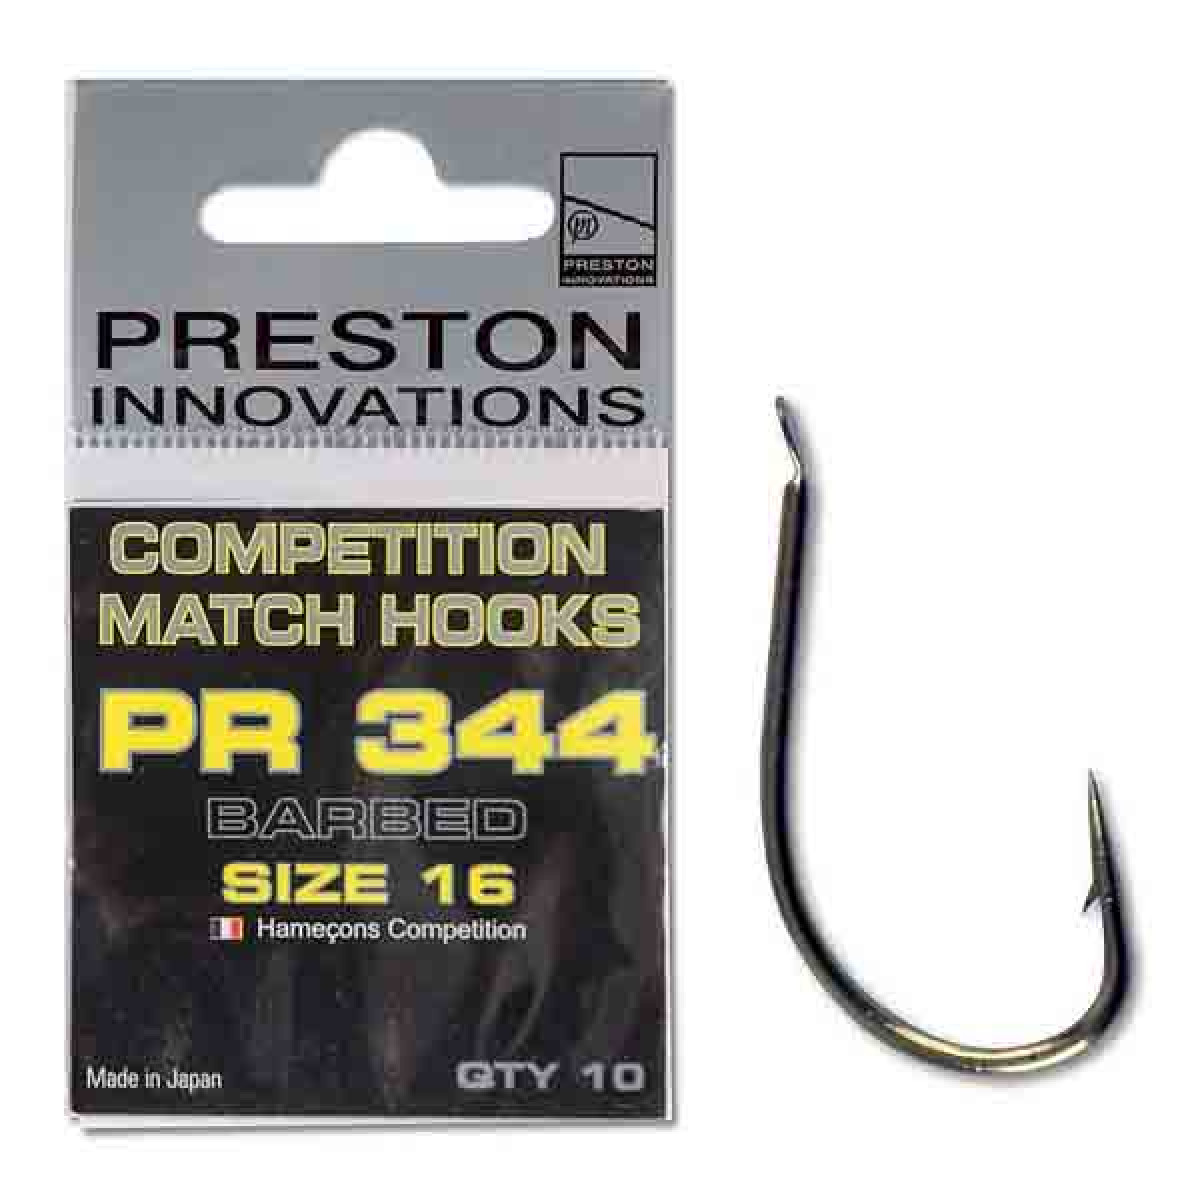 PRESTON PR-344